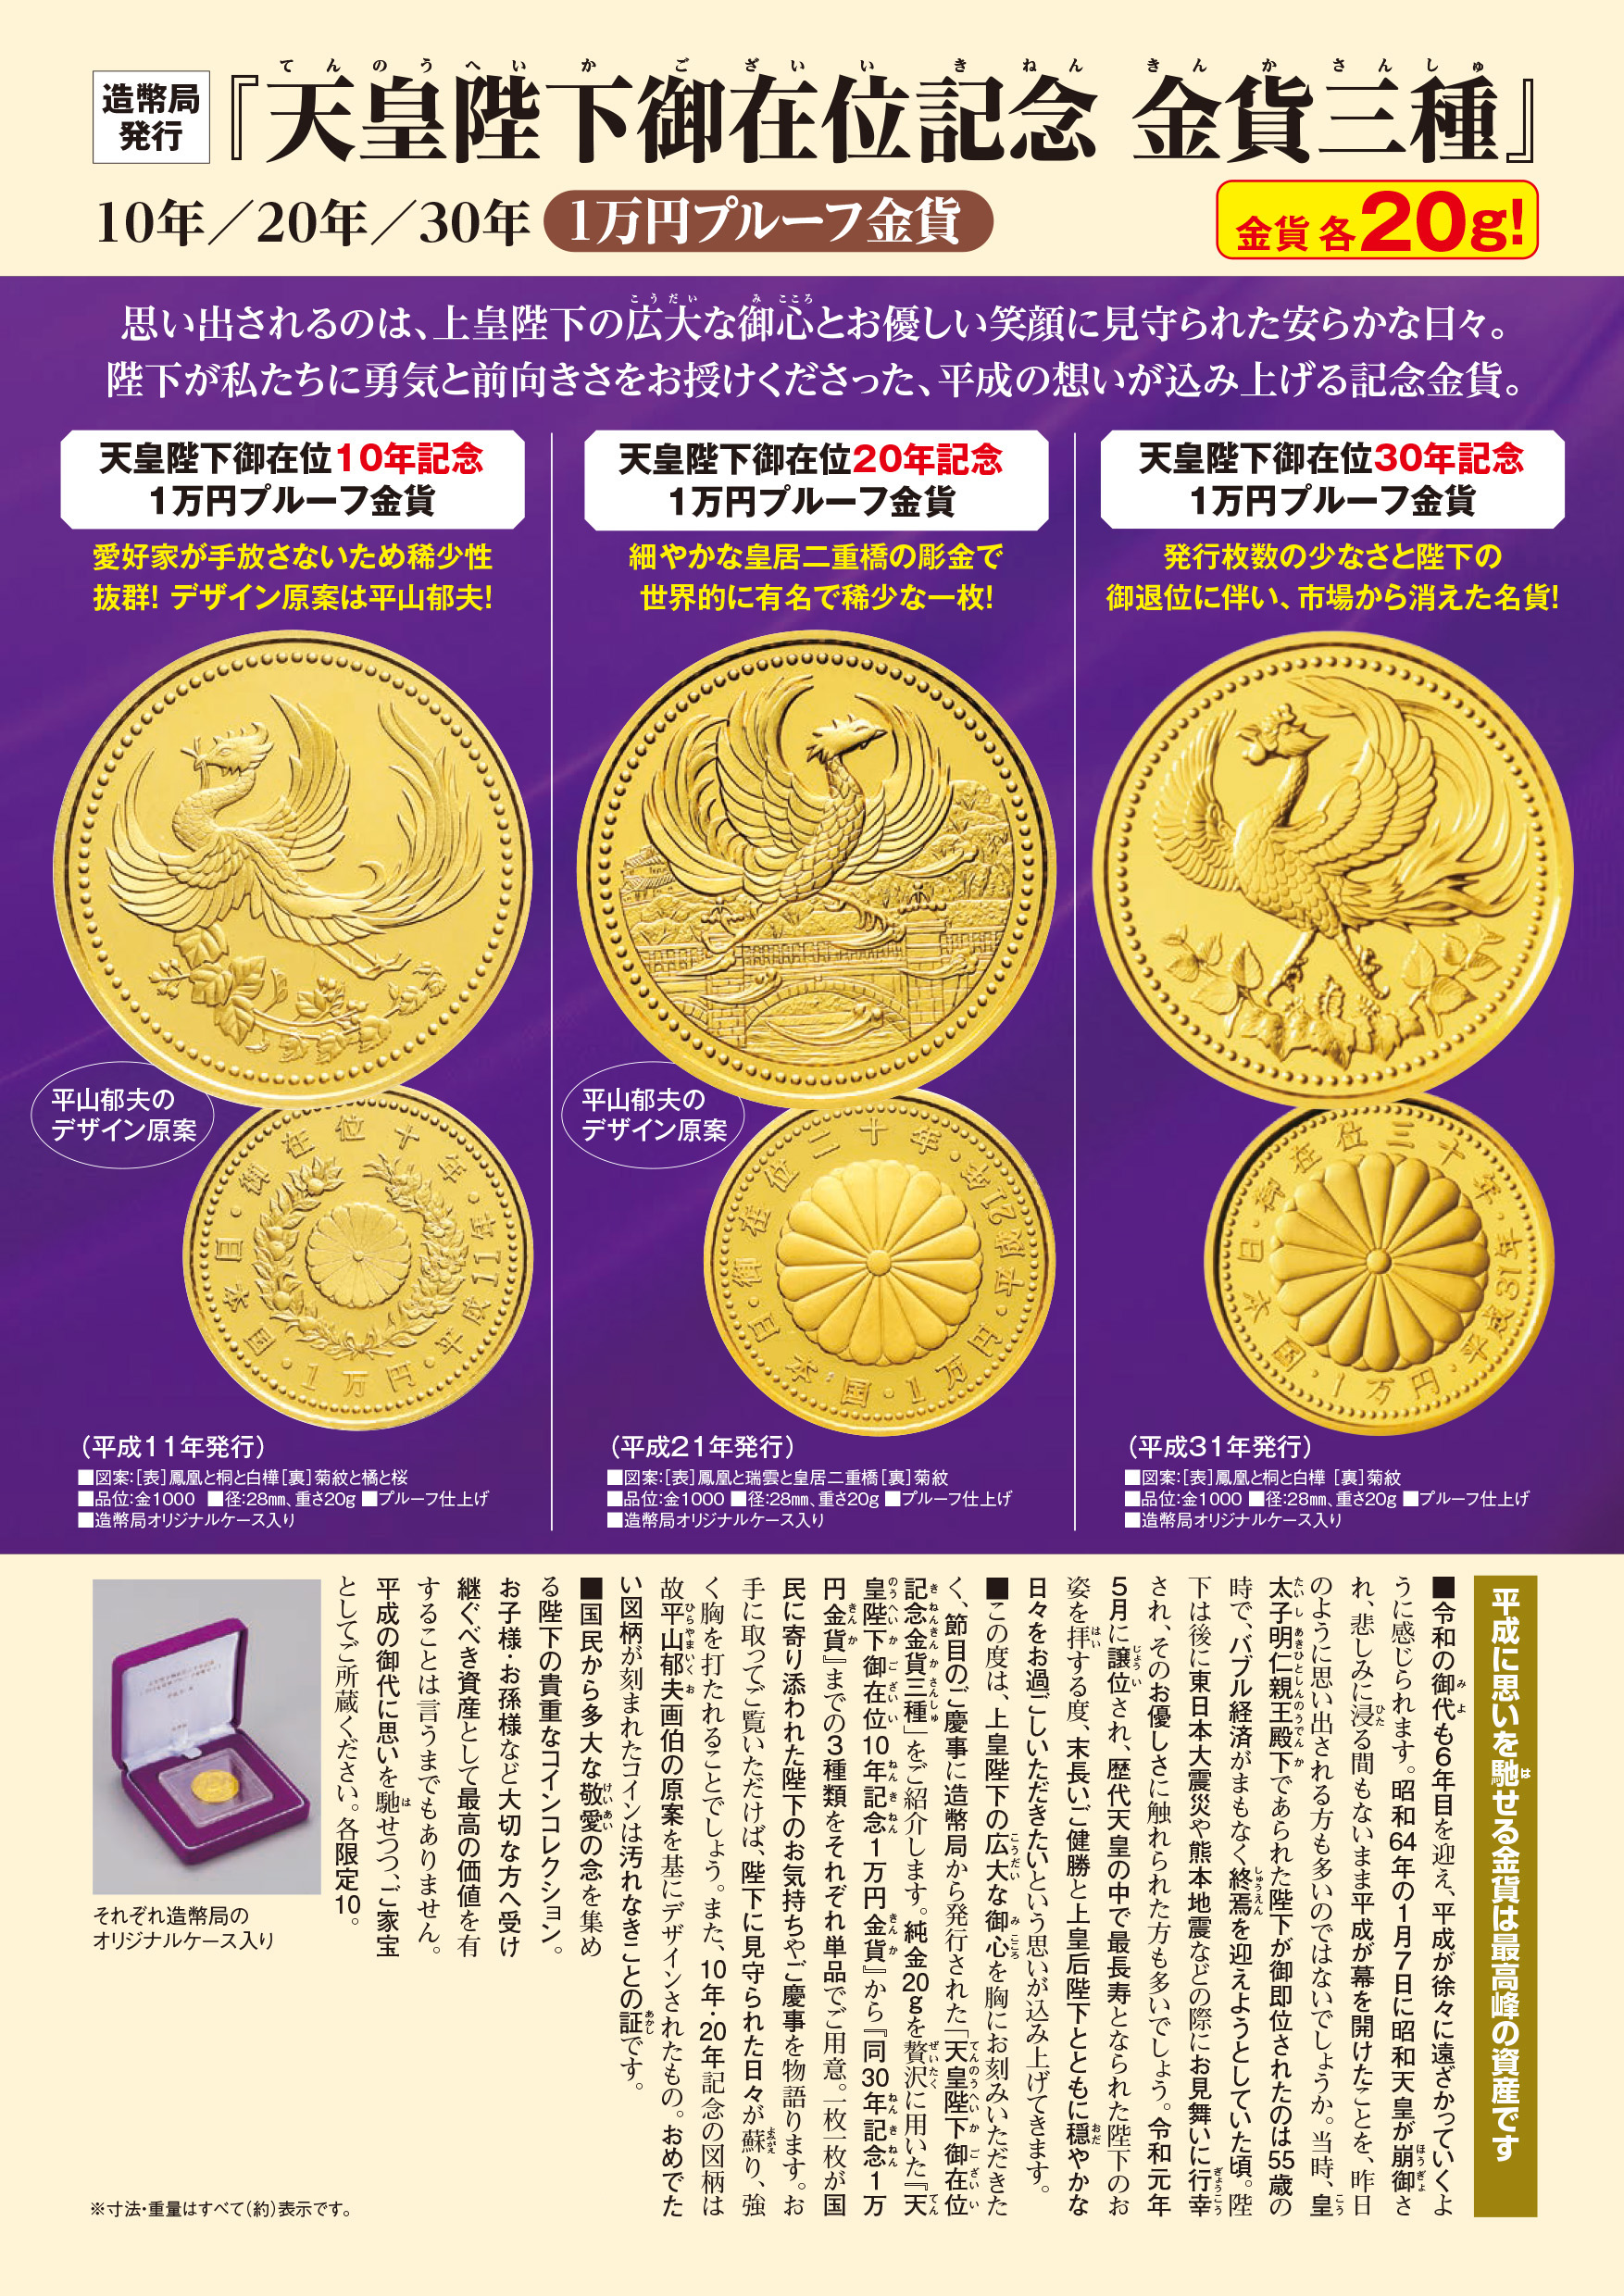 天皇陛下御在位10年記念1万円プルーフ金貨』 | 東京書芸館公式通販 